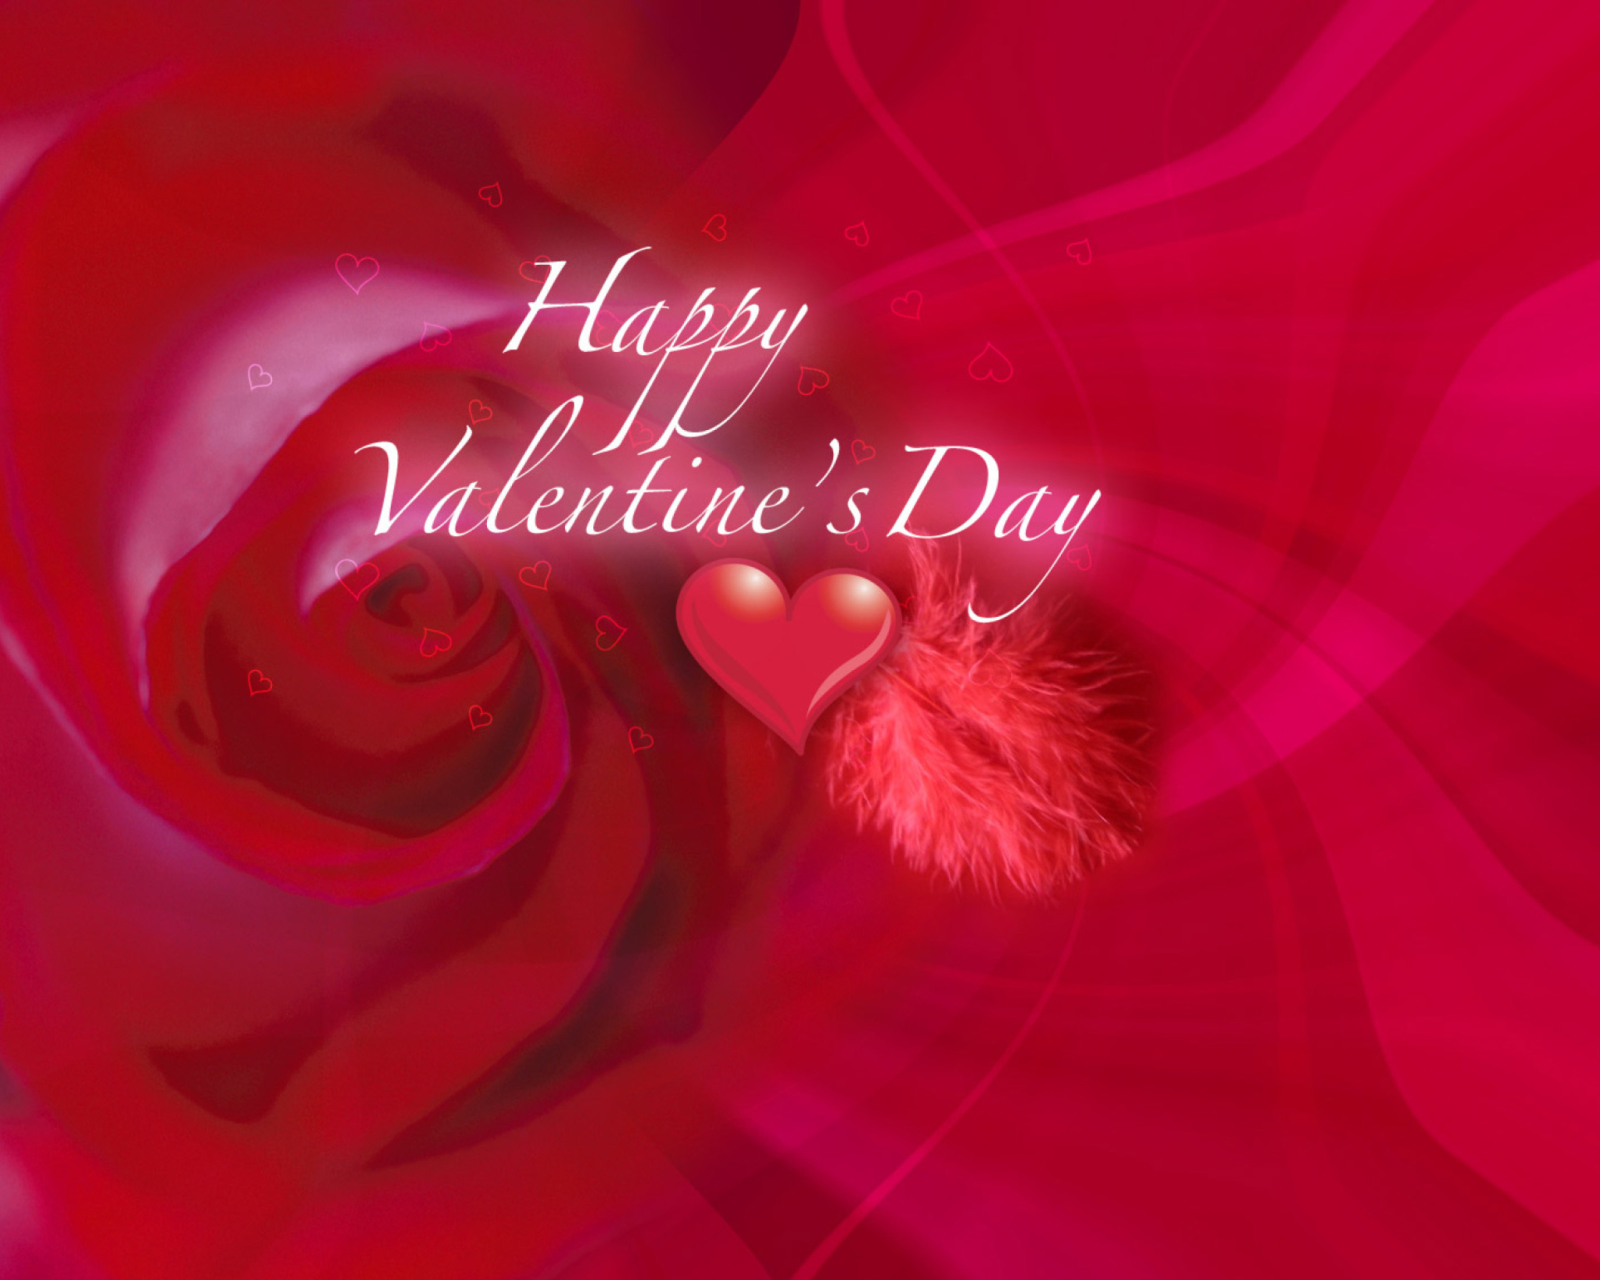 The Best Desktop Valentines Day Wallpapers screenshot #1 1600x1280